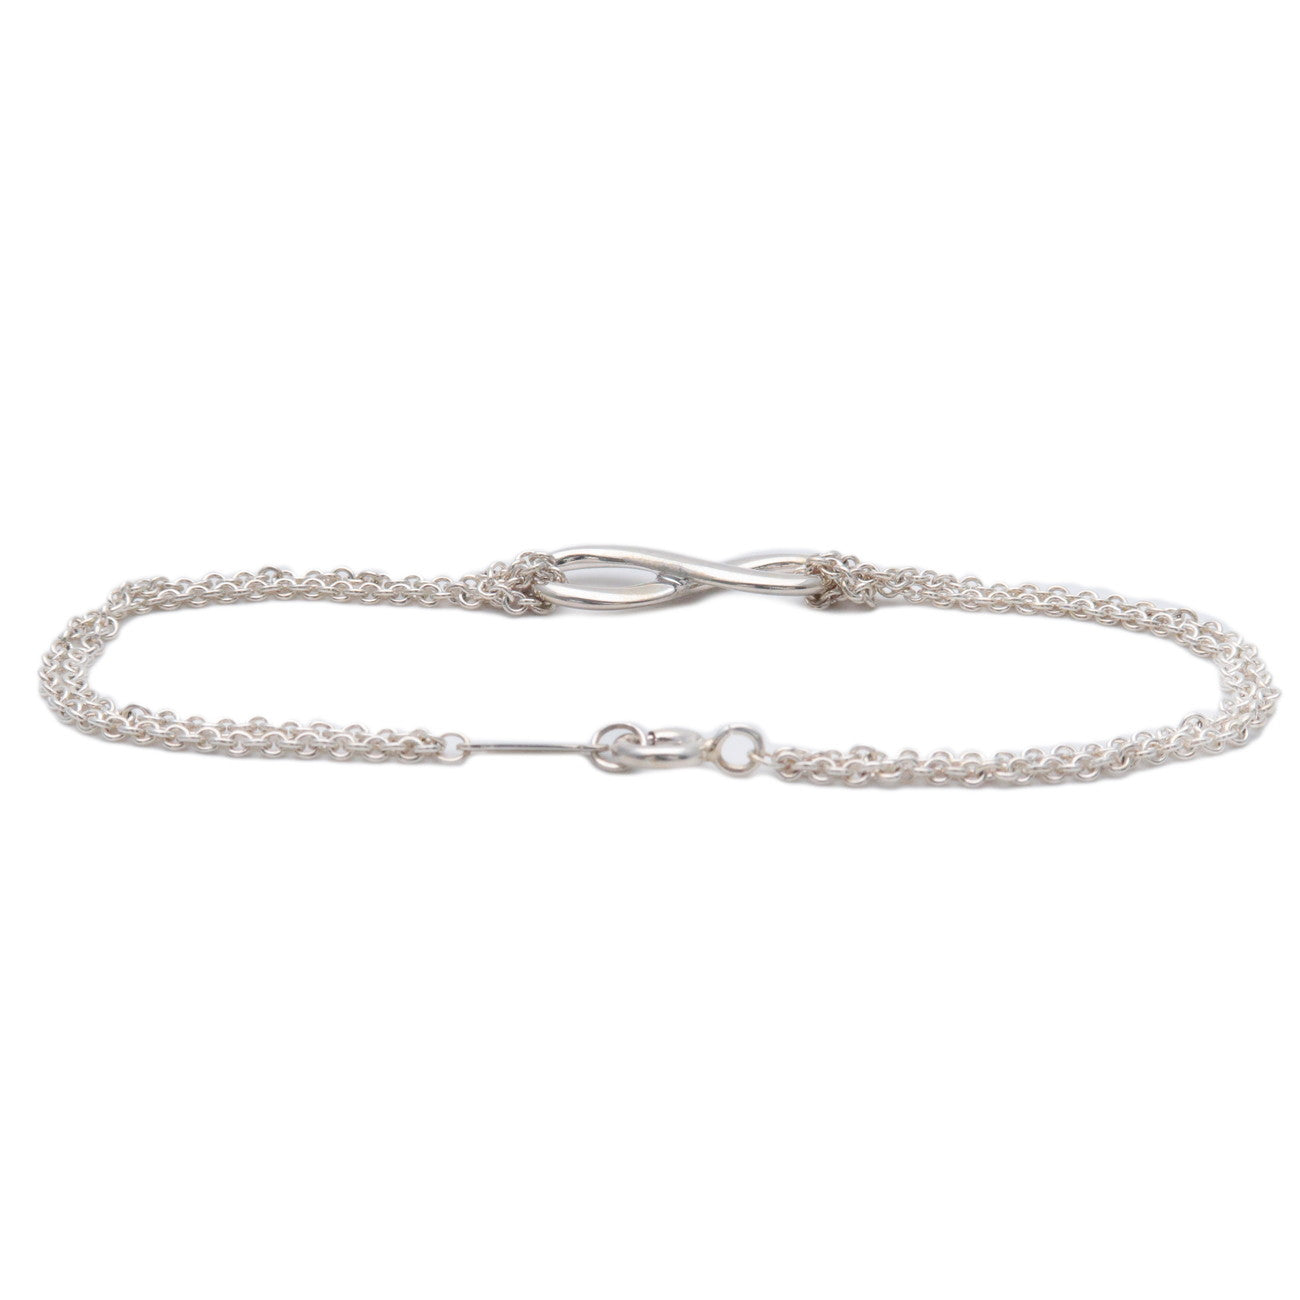 Tiffany&Co. Infinity Bracelet SV925 Silver